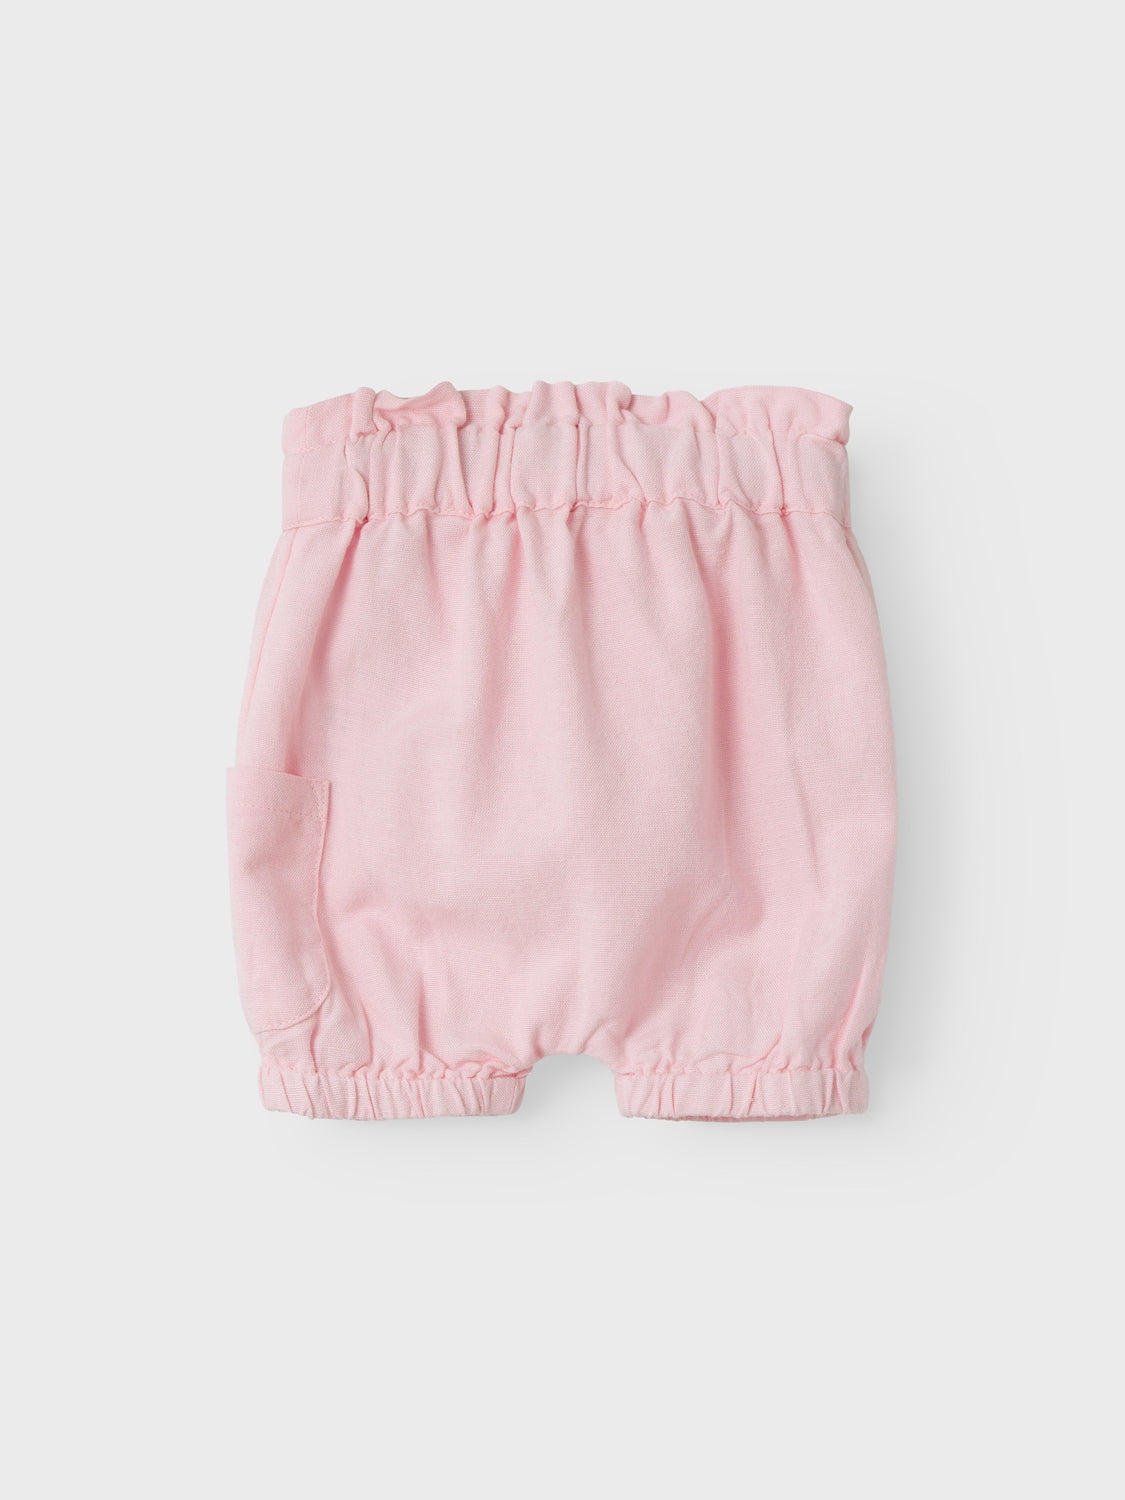 Name it - Fefona shorts - Parfait pink